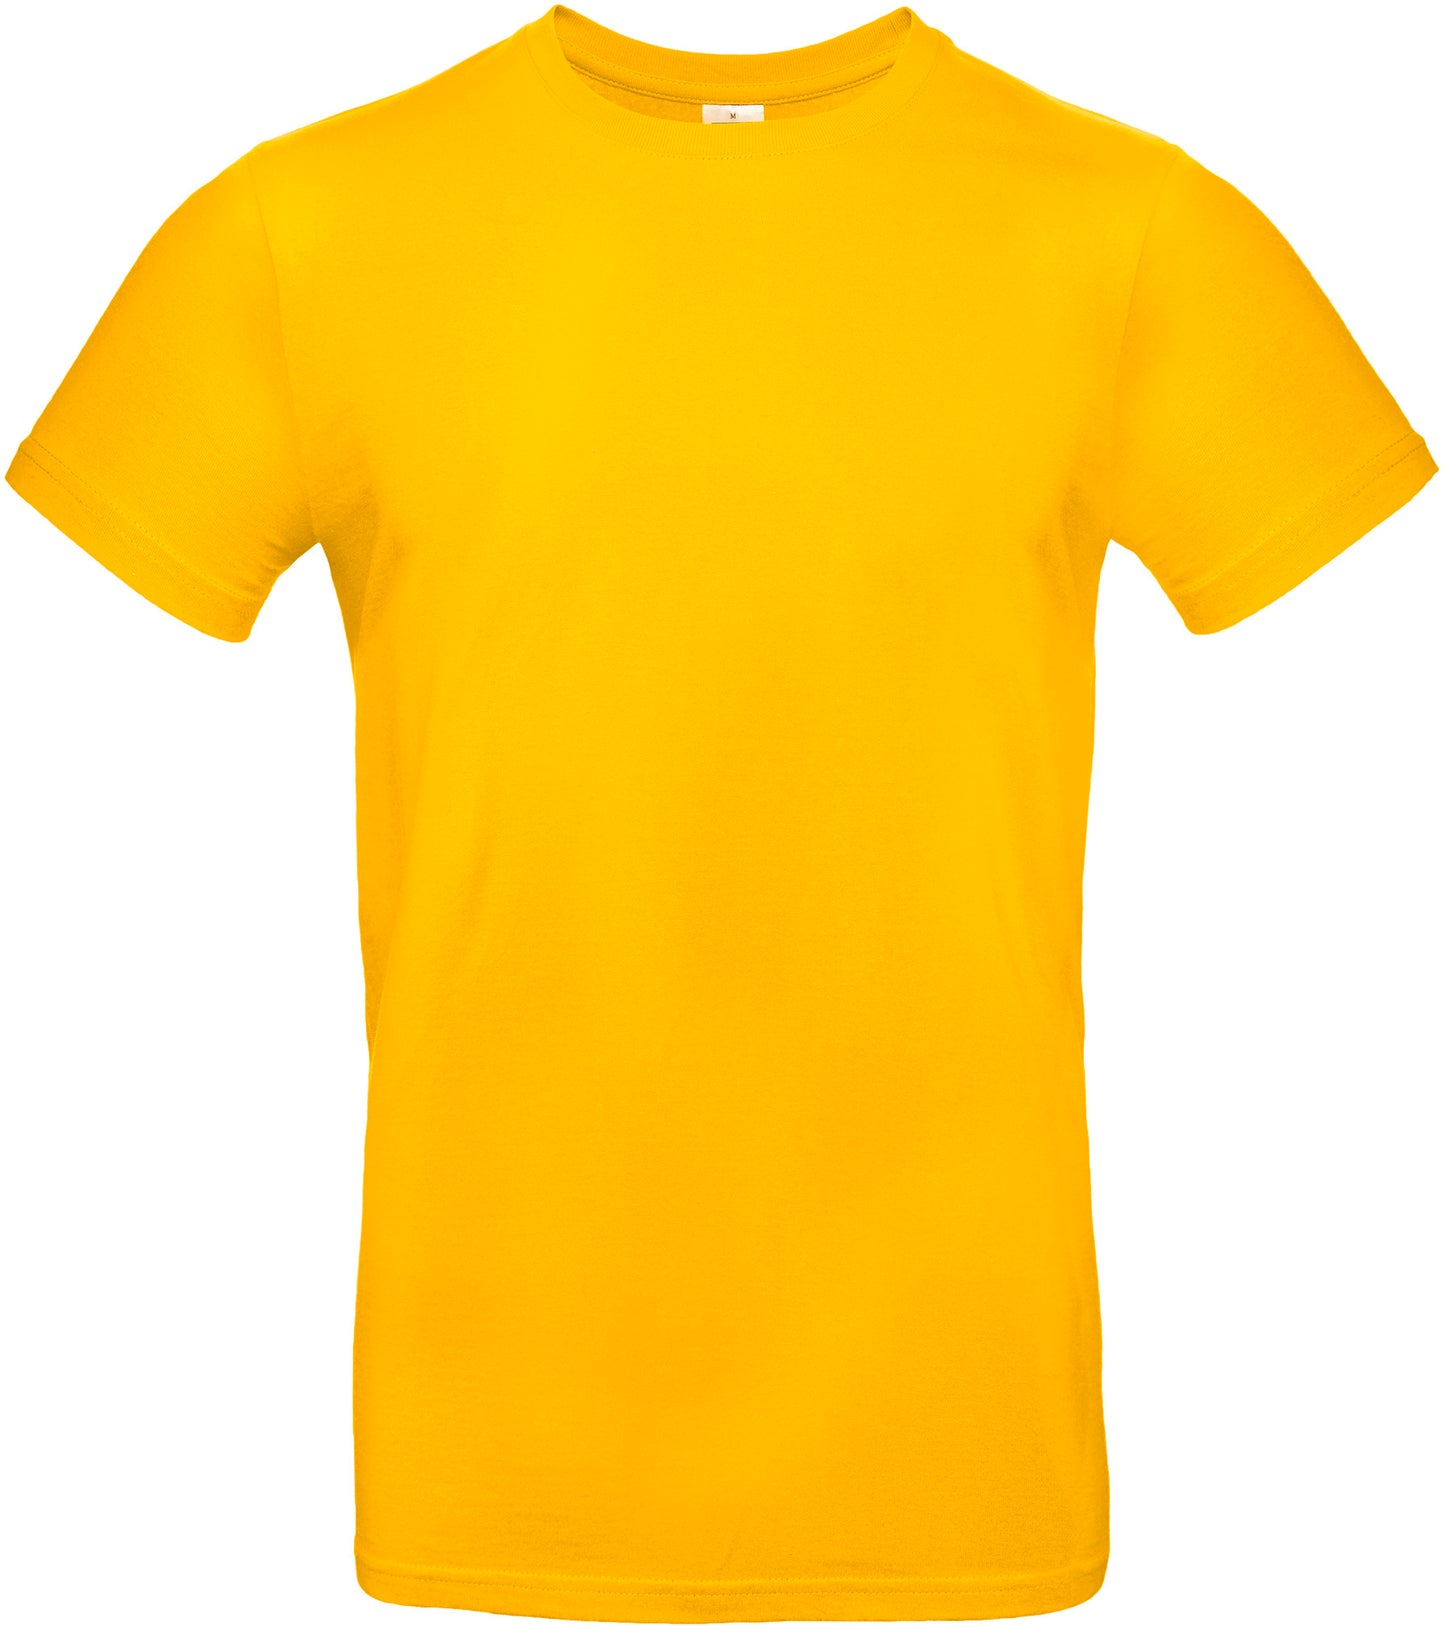 B&c - T-shirt épais - 7 coloris